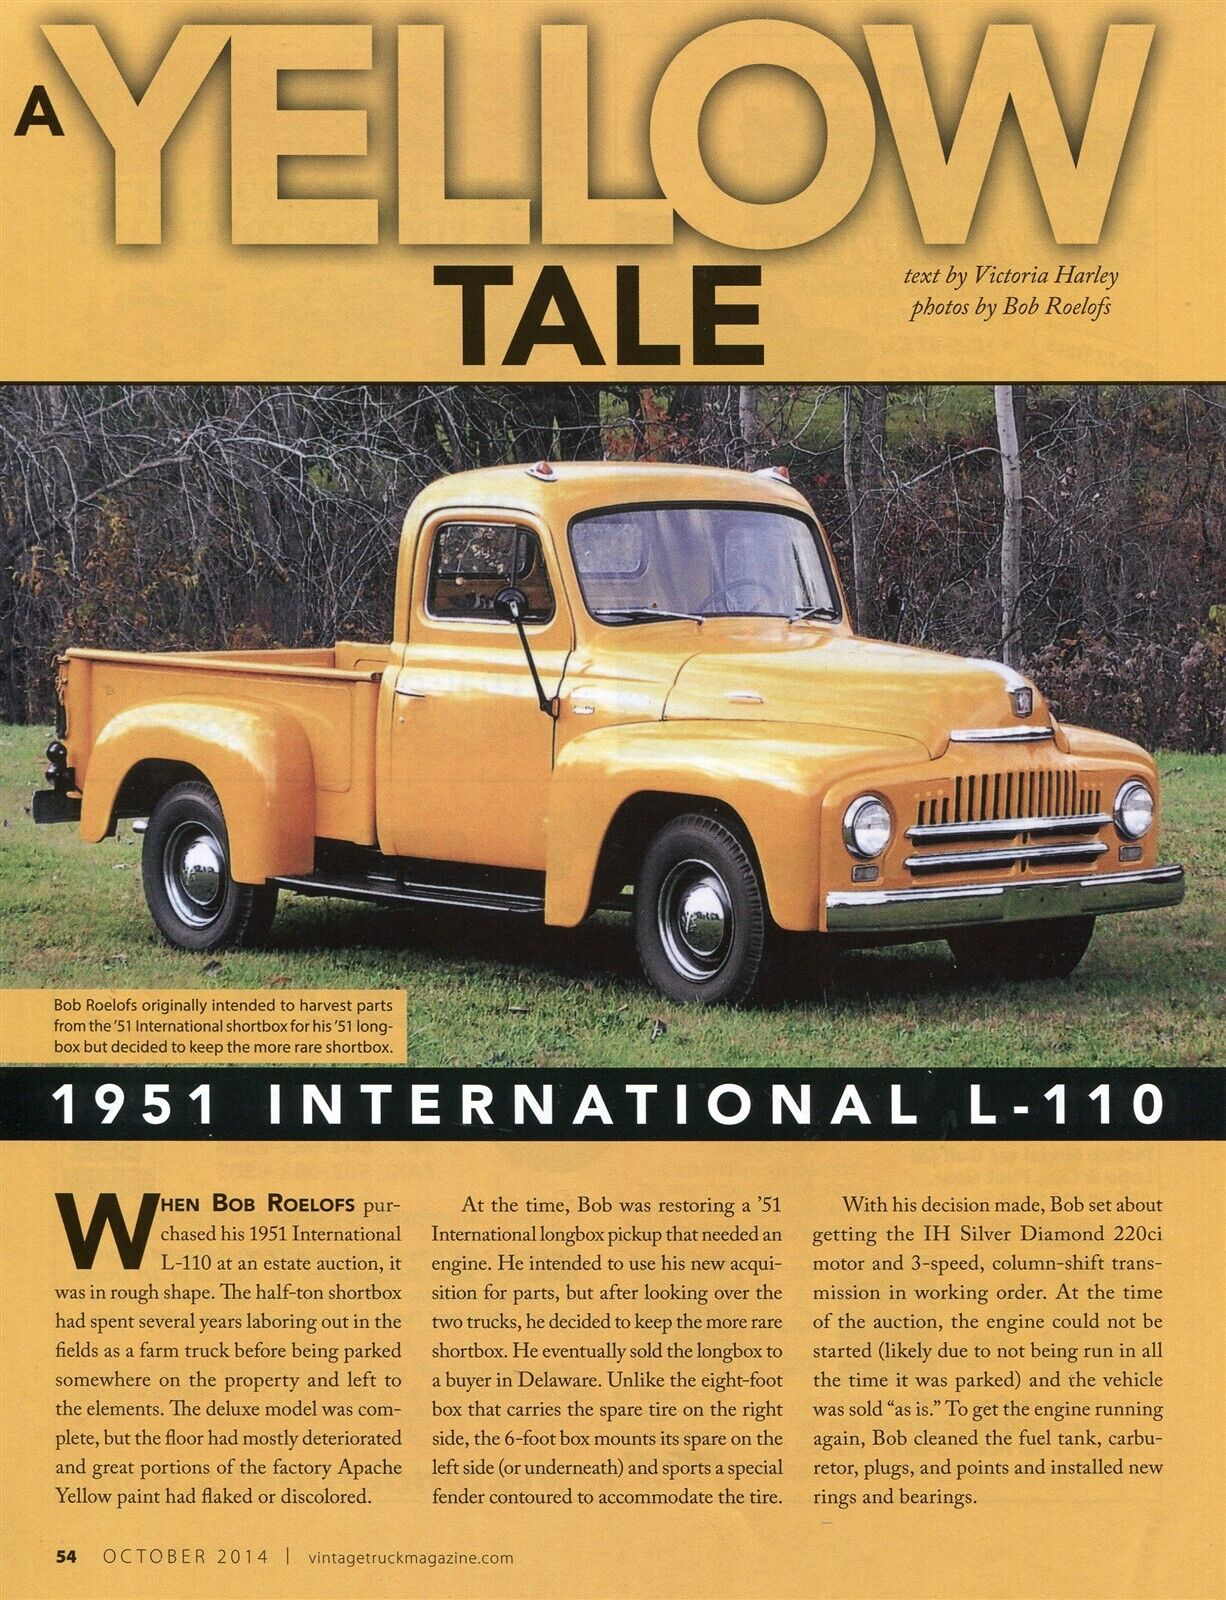 1951 International Harvester L-110 Pickup Truck 4 Pg Color Article